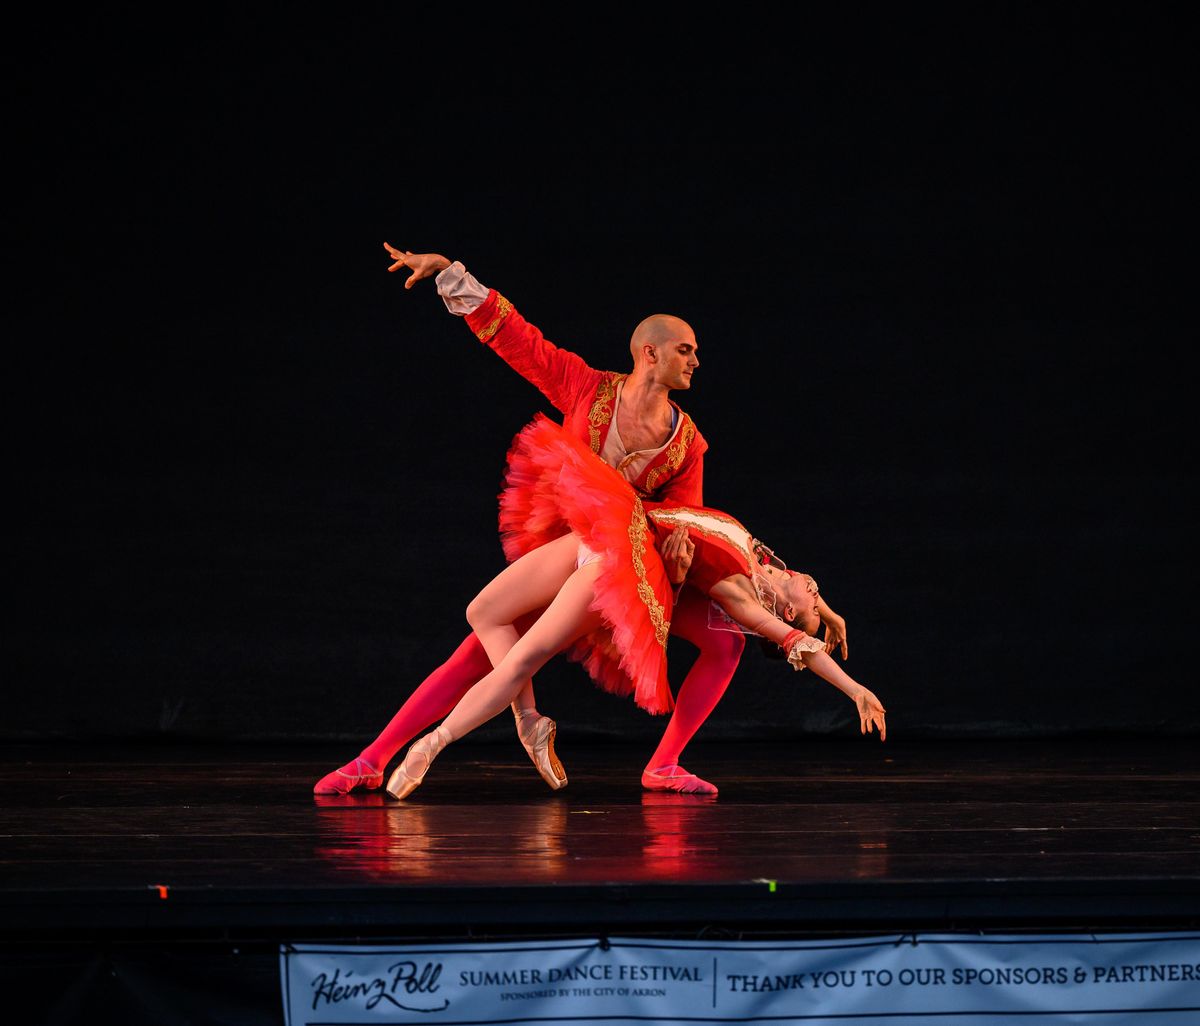 Verb Ballets at Heinz Poll Summer Dance Festival